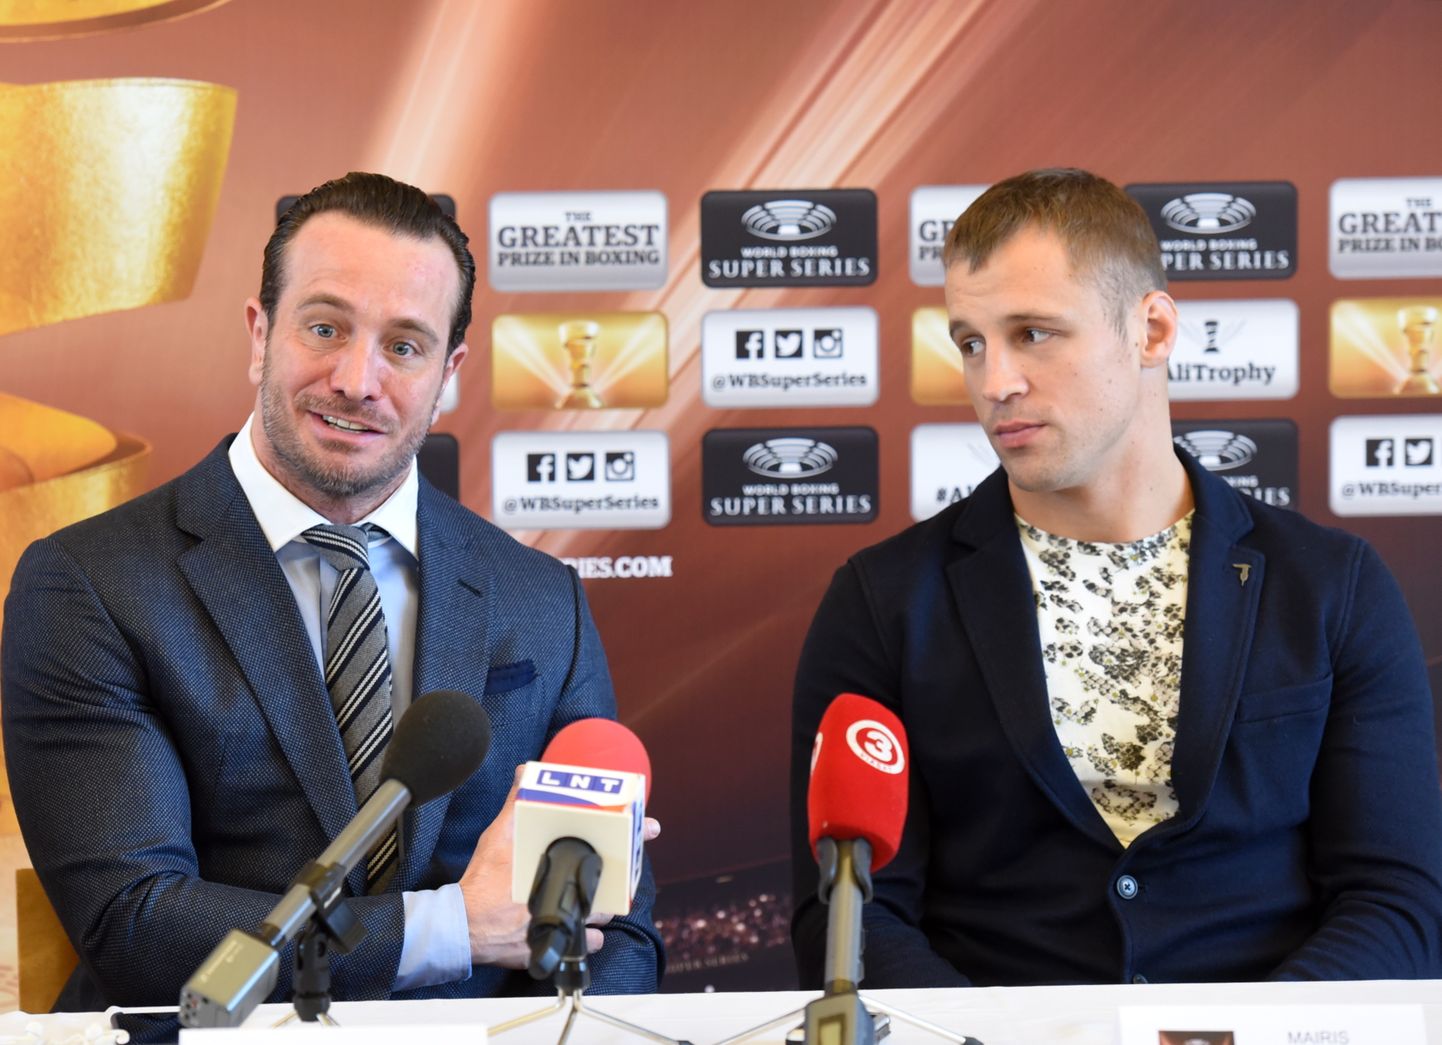 Pasaules boksa supersērijas izveidotājs Kalle Zauerlands (no kreisās) un bokseris Mairis Briedis piedalās preses konferencē, kurā informē par nākamo cīņu.